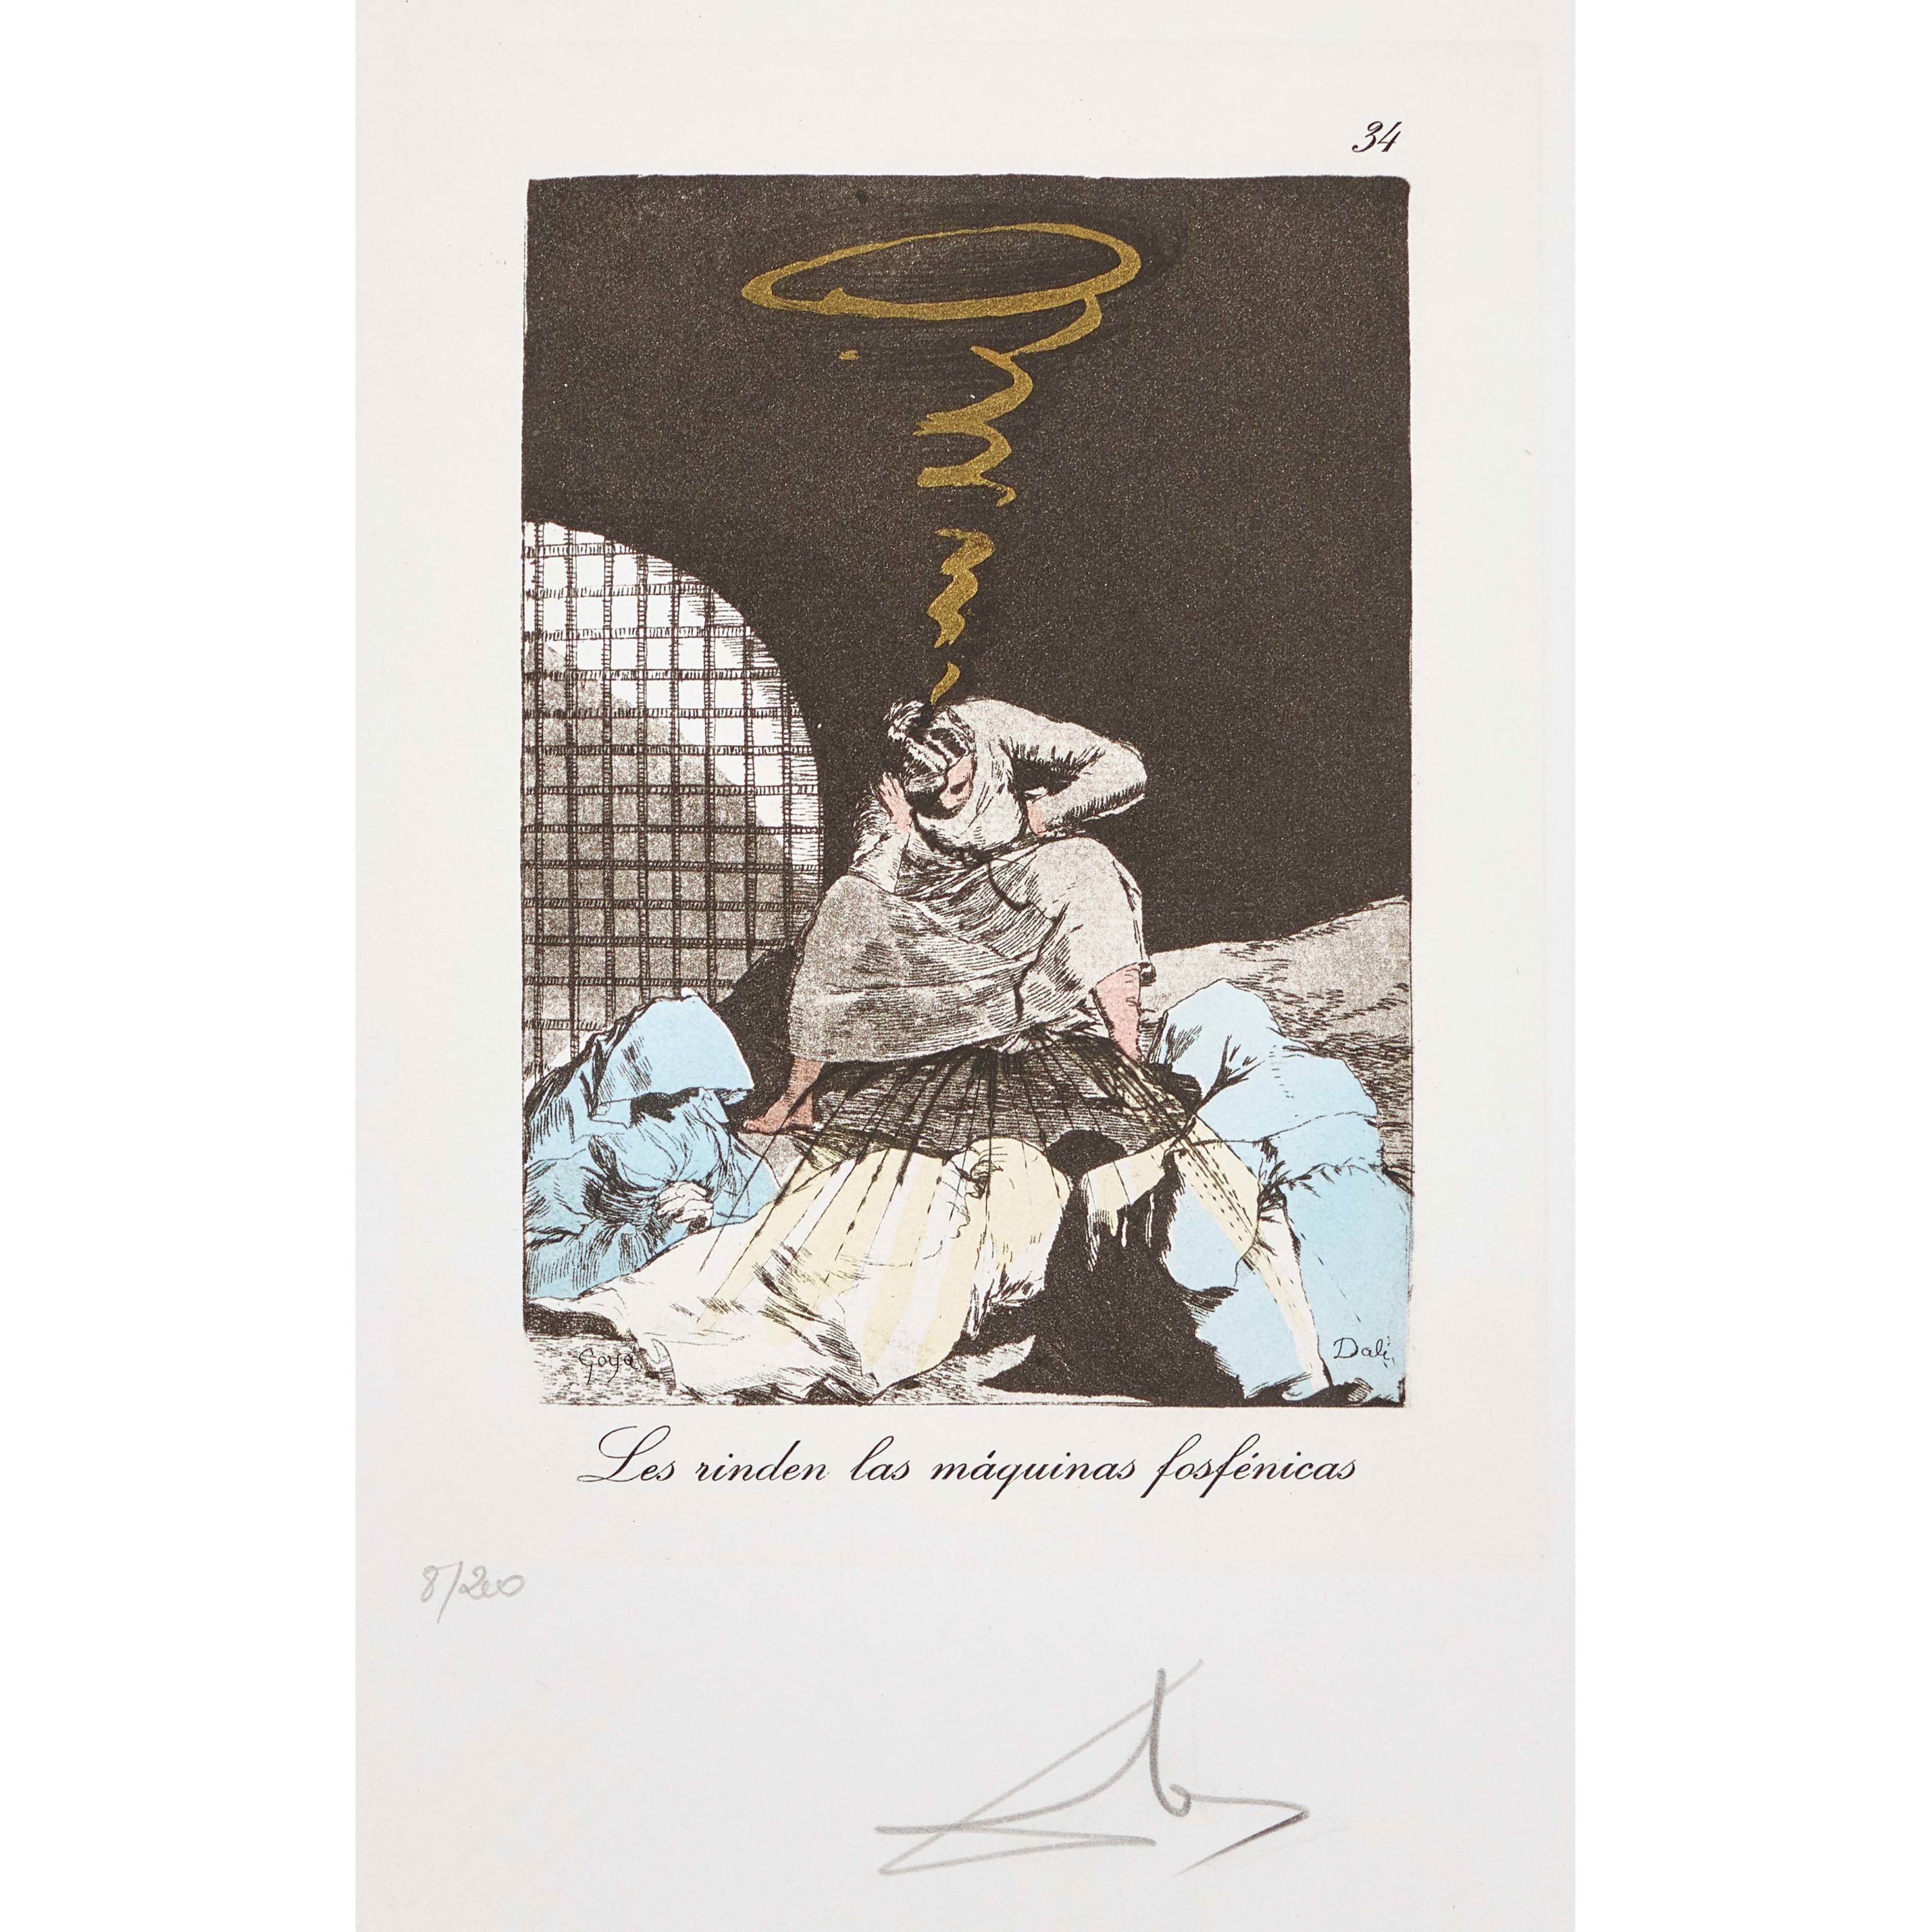 2 Works; Les rinden las maquinas fosfenicas; Piensa en el Angelus de Millet by Salvador Dalí, 1977